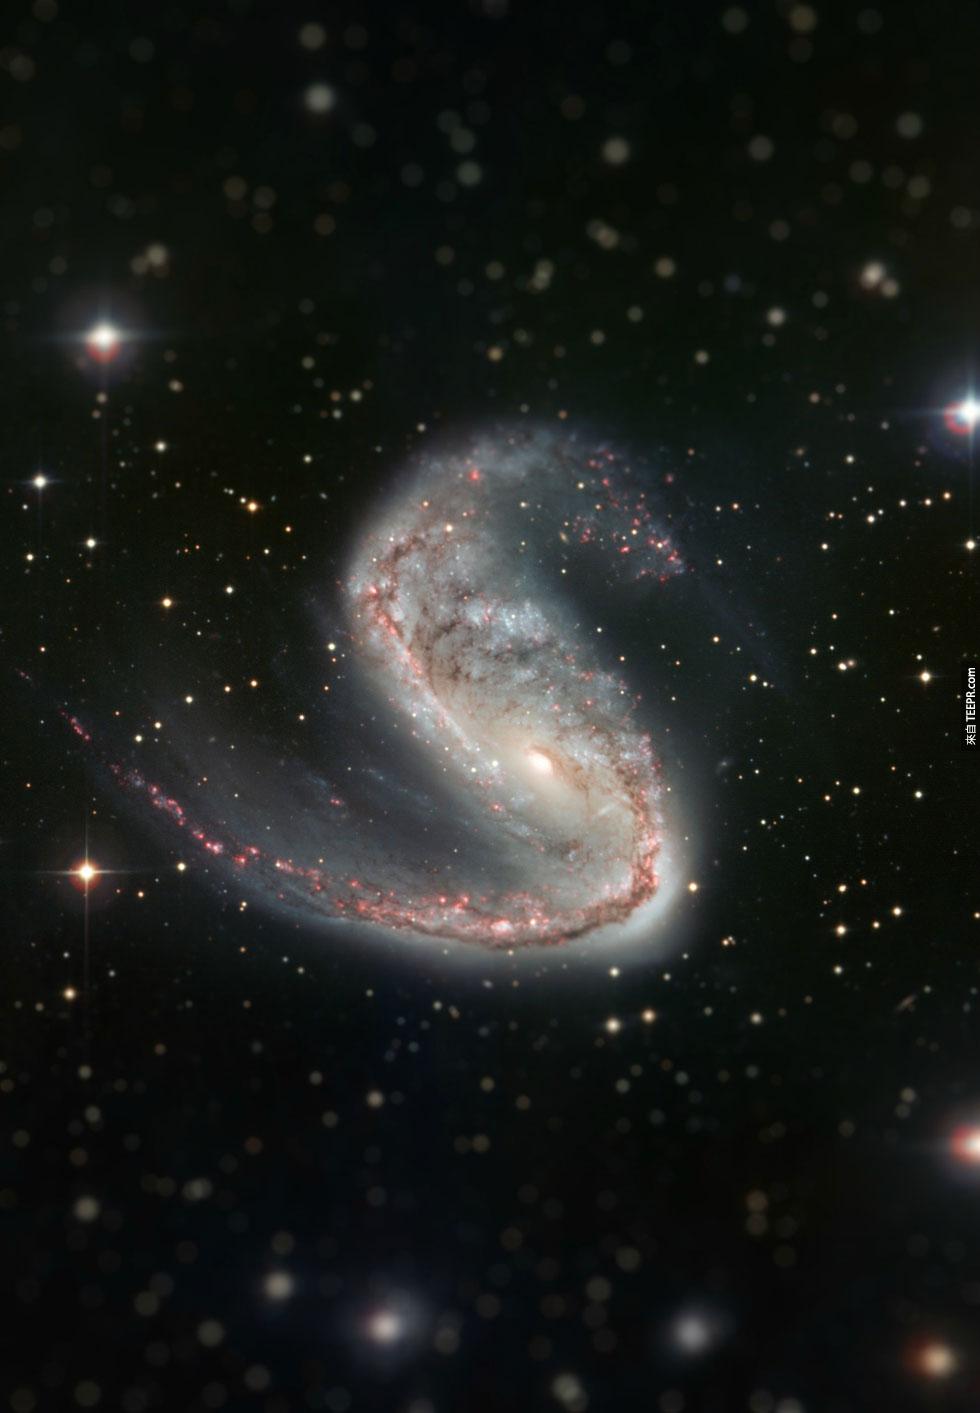 4. 肉鉤星係 (Meathook Galaxy)